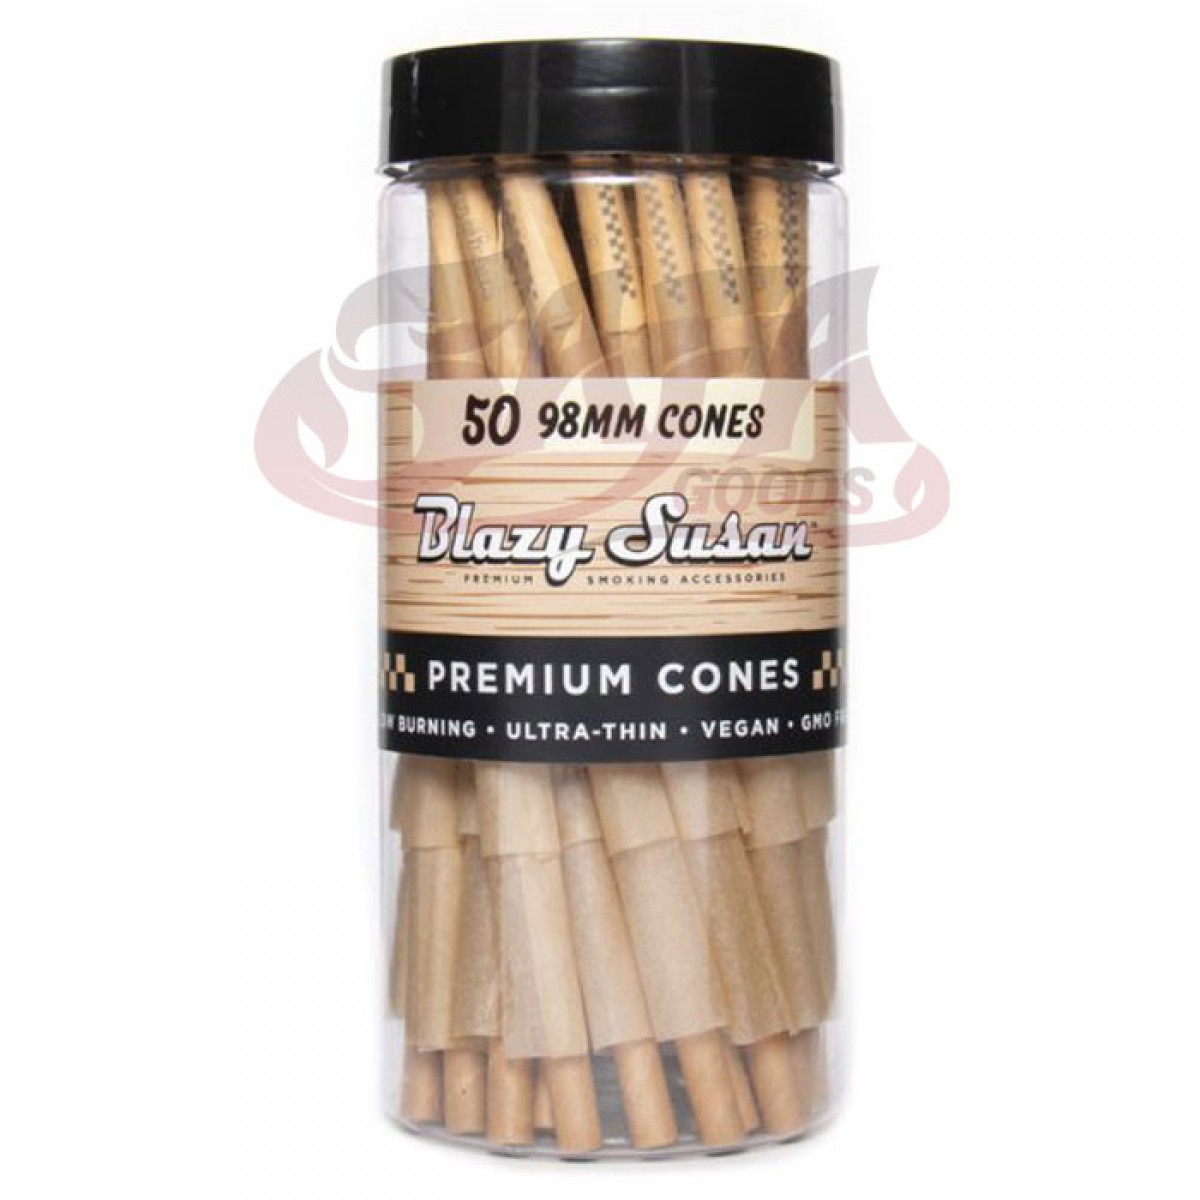 Blazy Susan - Pre Rolled Cones - Unbleached Cones 98mm